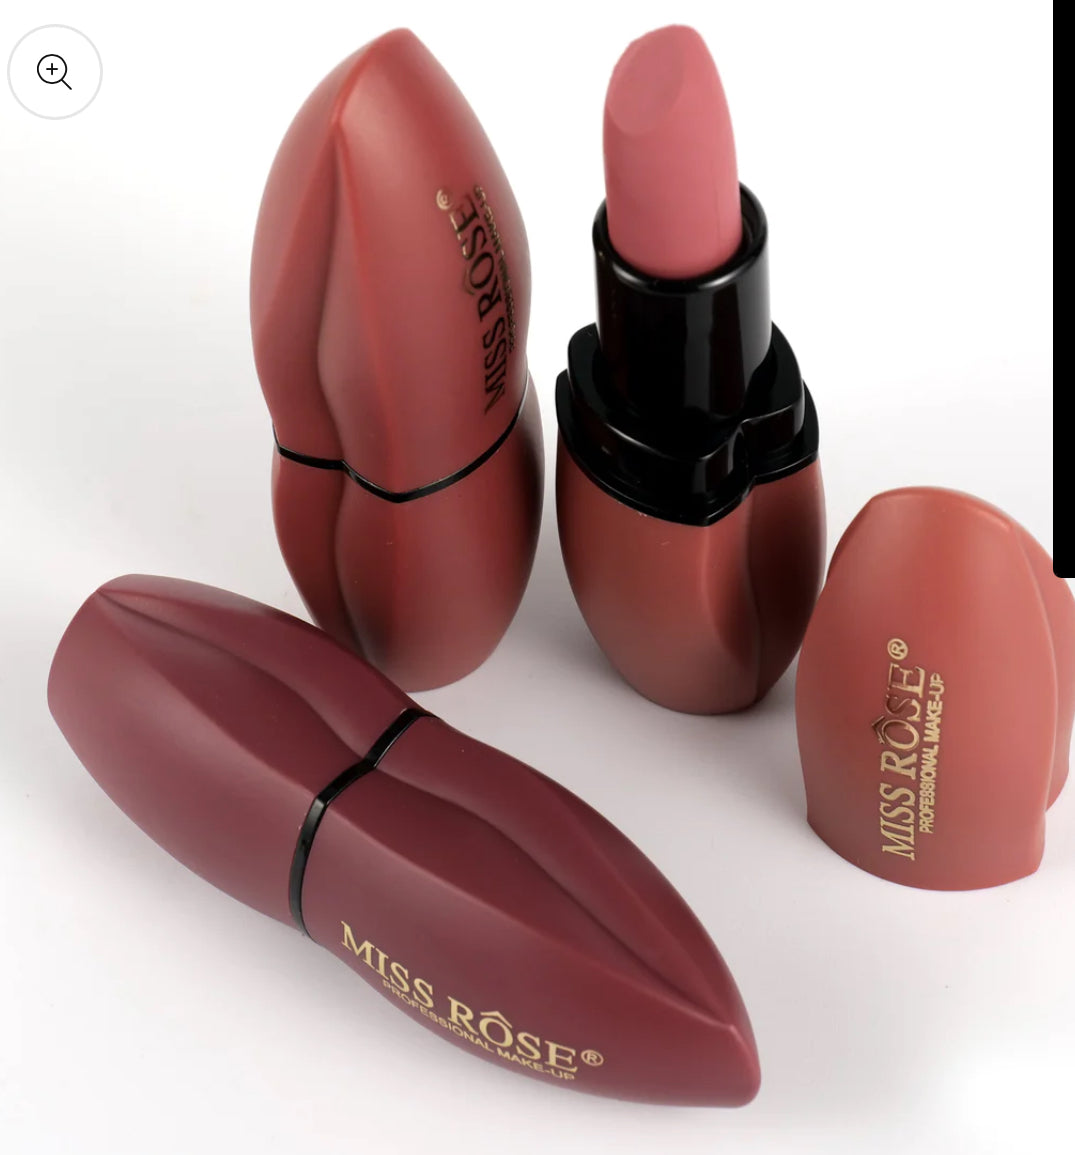 Missrose Double Extreme Lipstick